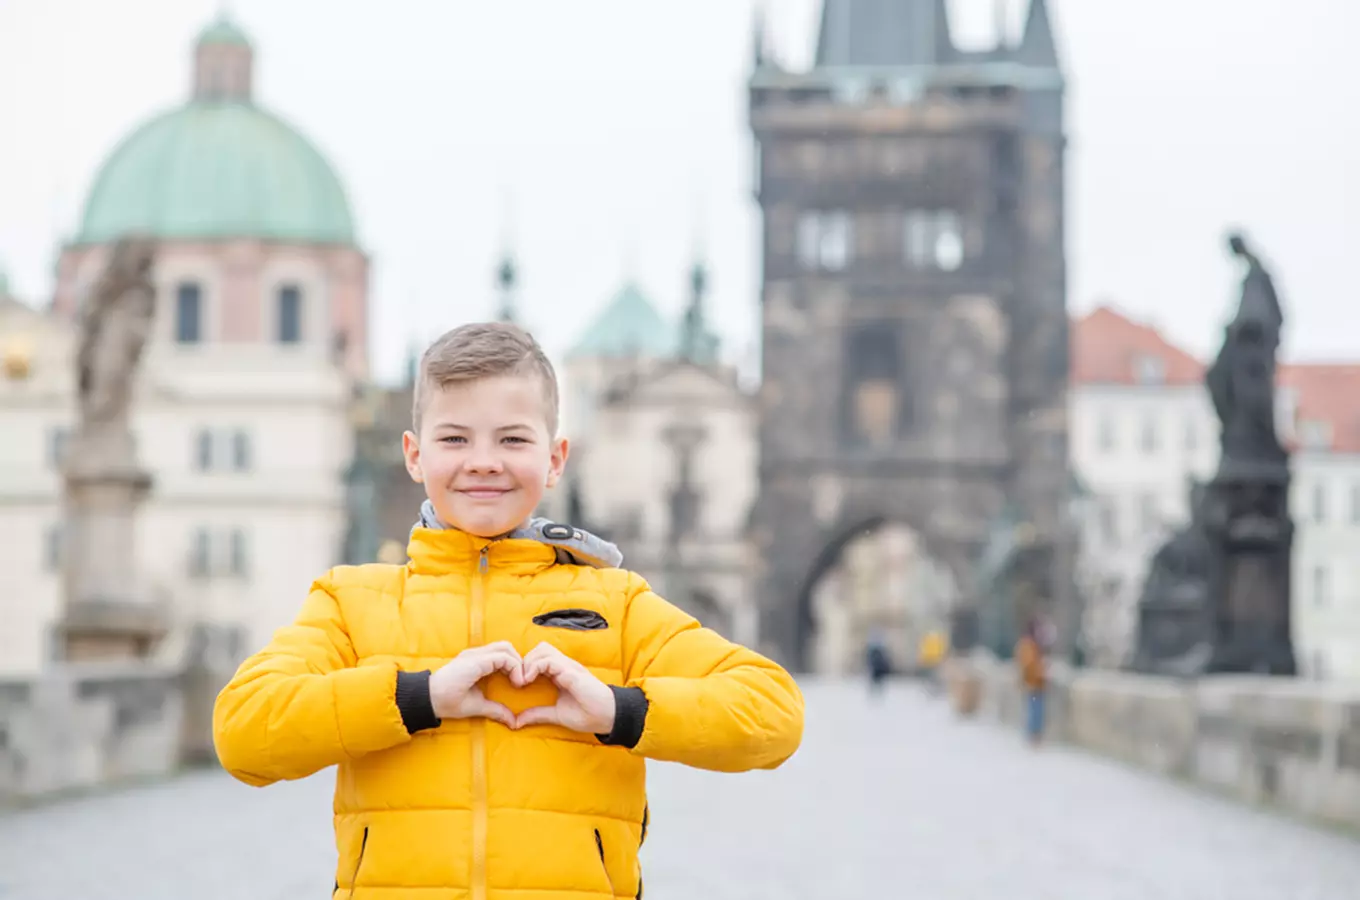 Užijte si v Praze pololetní prázdniny: vezměte děti do zoo, aquaparku či do muzea